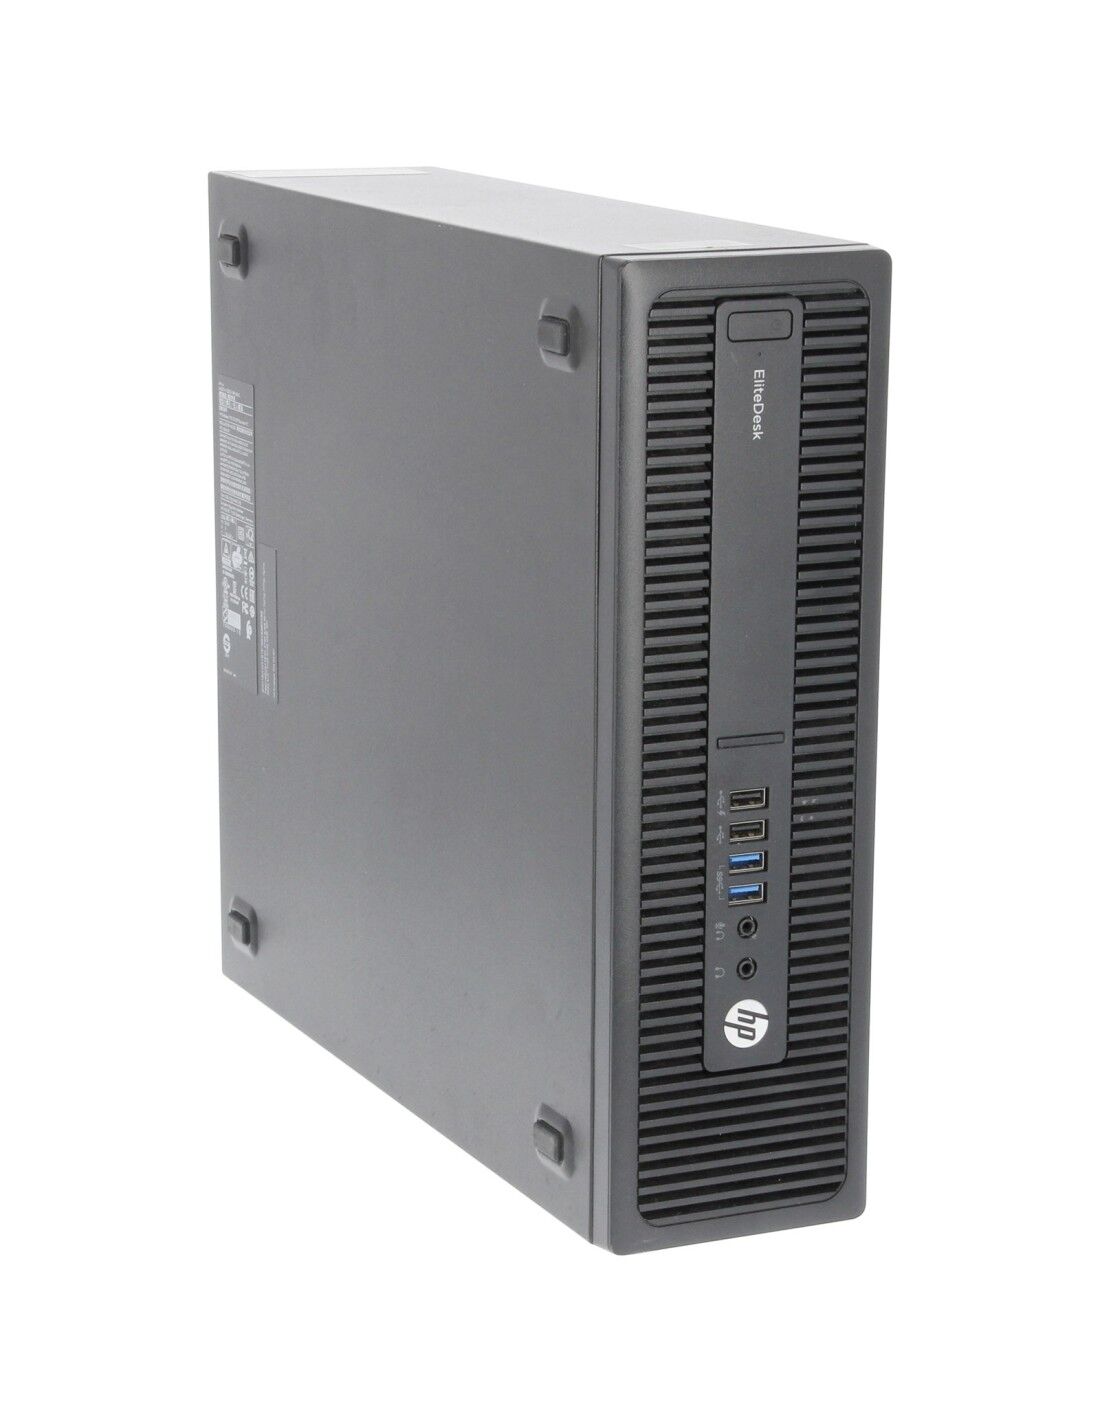 HP EliteDesk 705 G3 SFF PC Computer AMD A6-8570 Ram 8GB SSD 240GB (Ricondizionato Grado A)